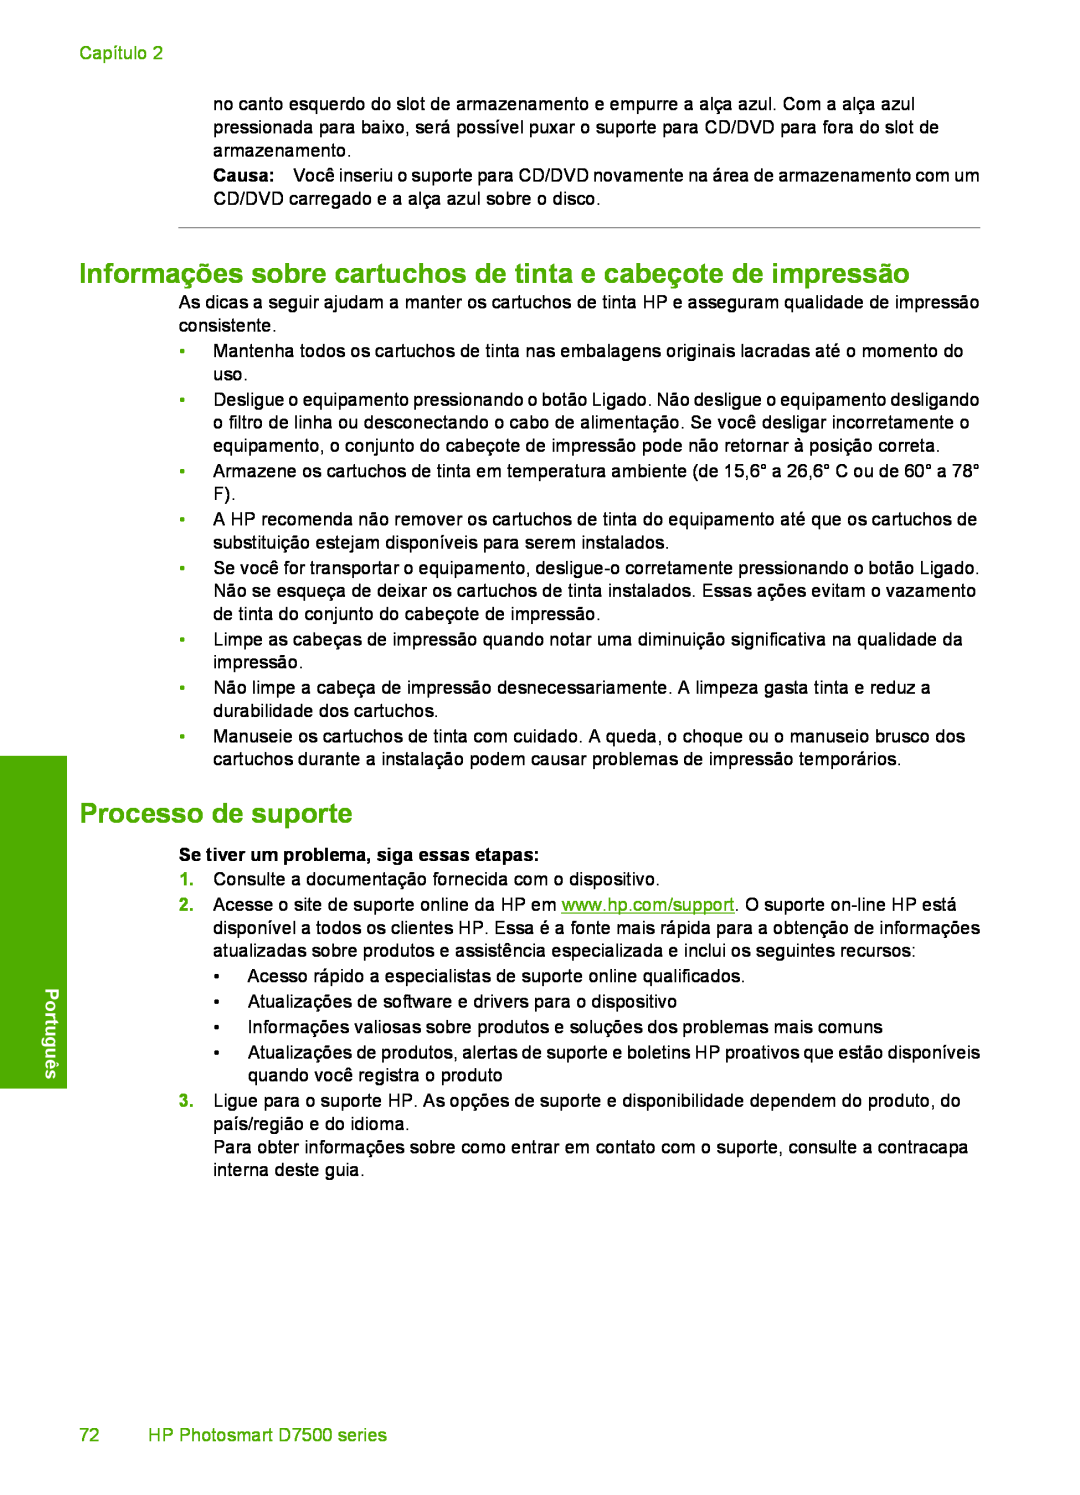 HP D7560 manual Informações sobre cartuchos de tinta e cabeçote de impressão, Processo de suporte, Capítulo, Português 